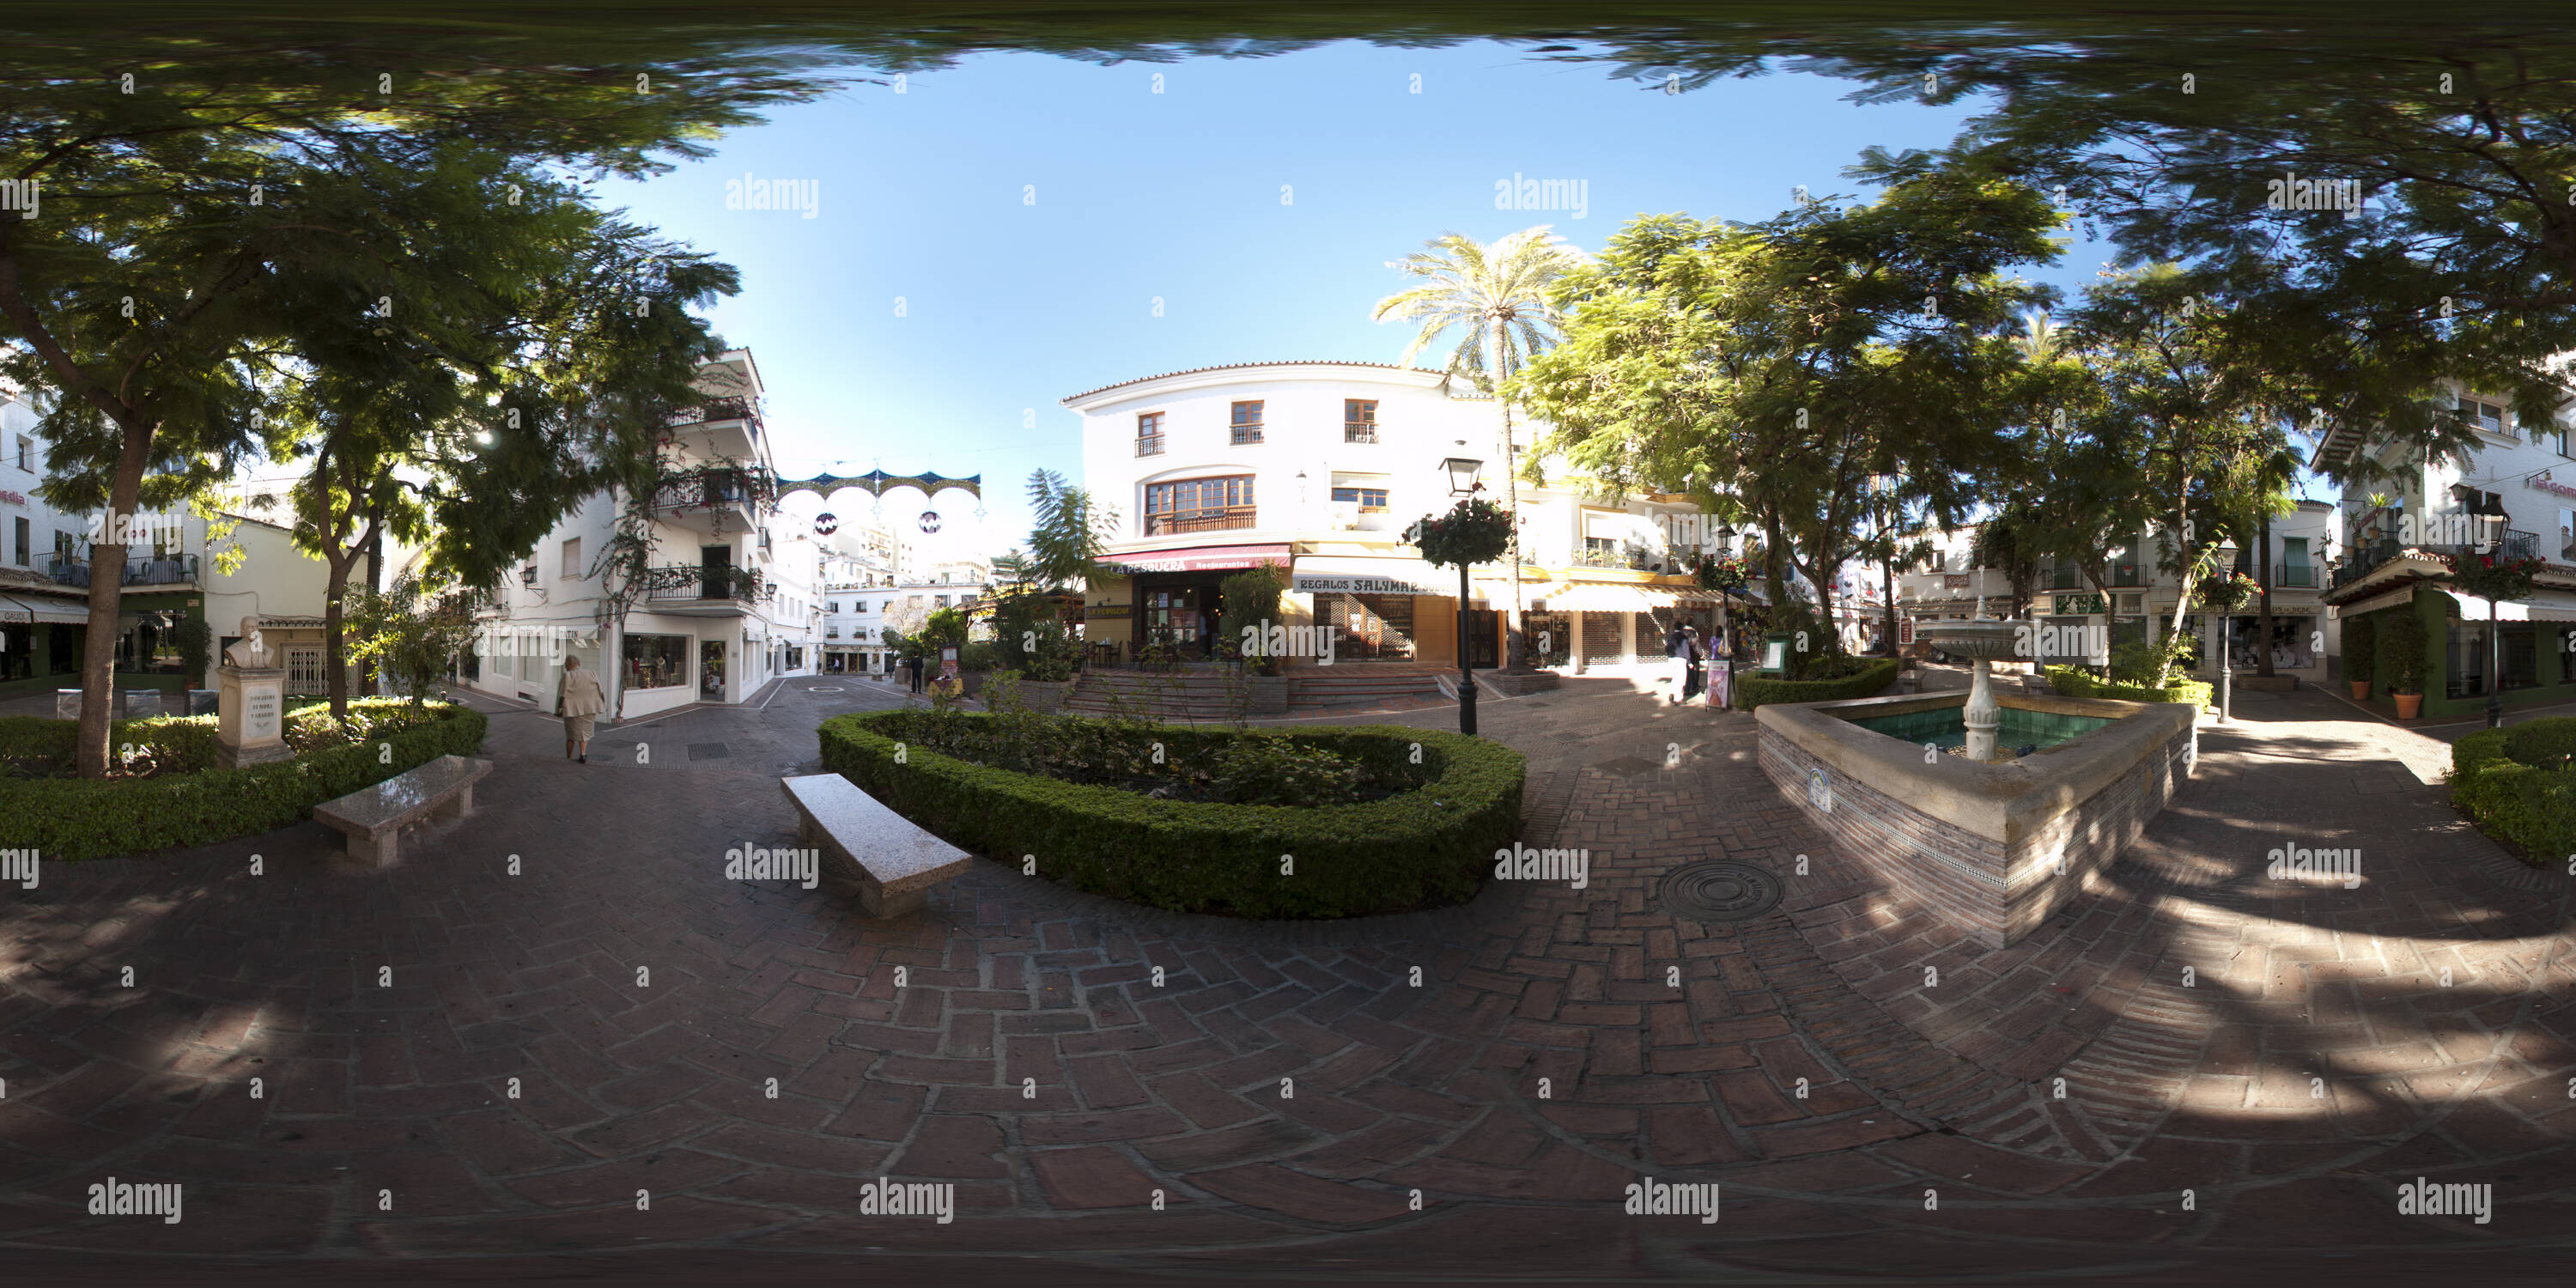 Vista panorámica en 360 grados de La Plaza de La Victoria de Marbella